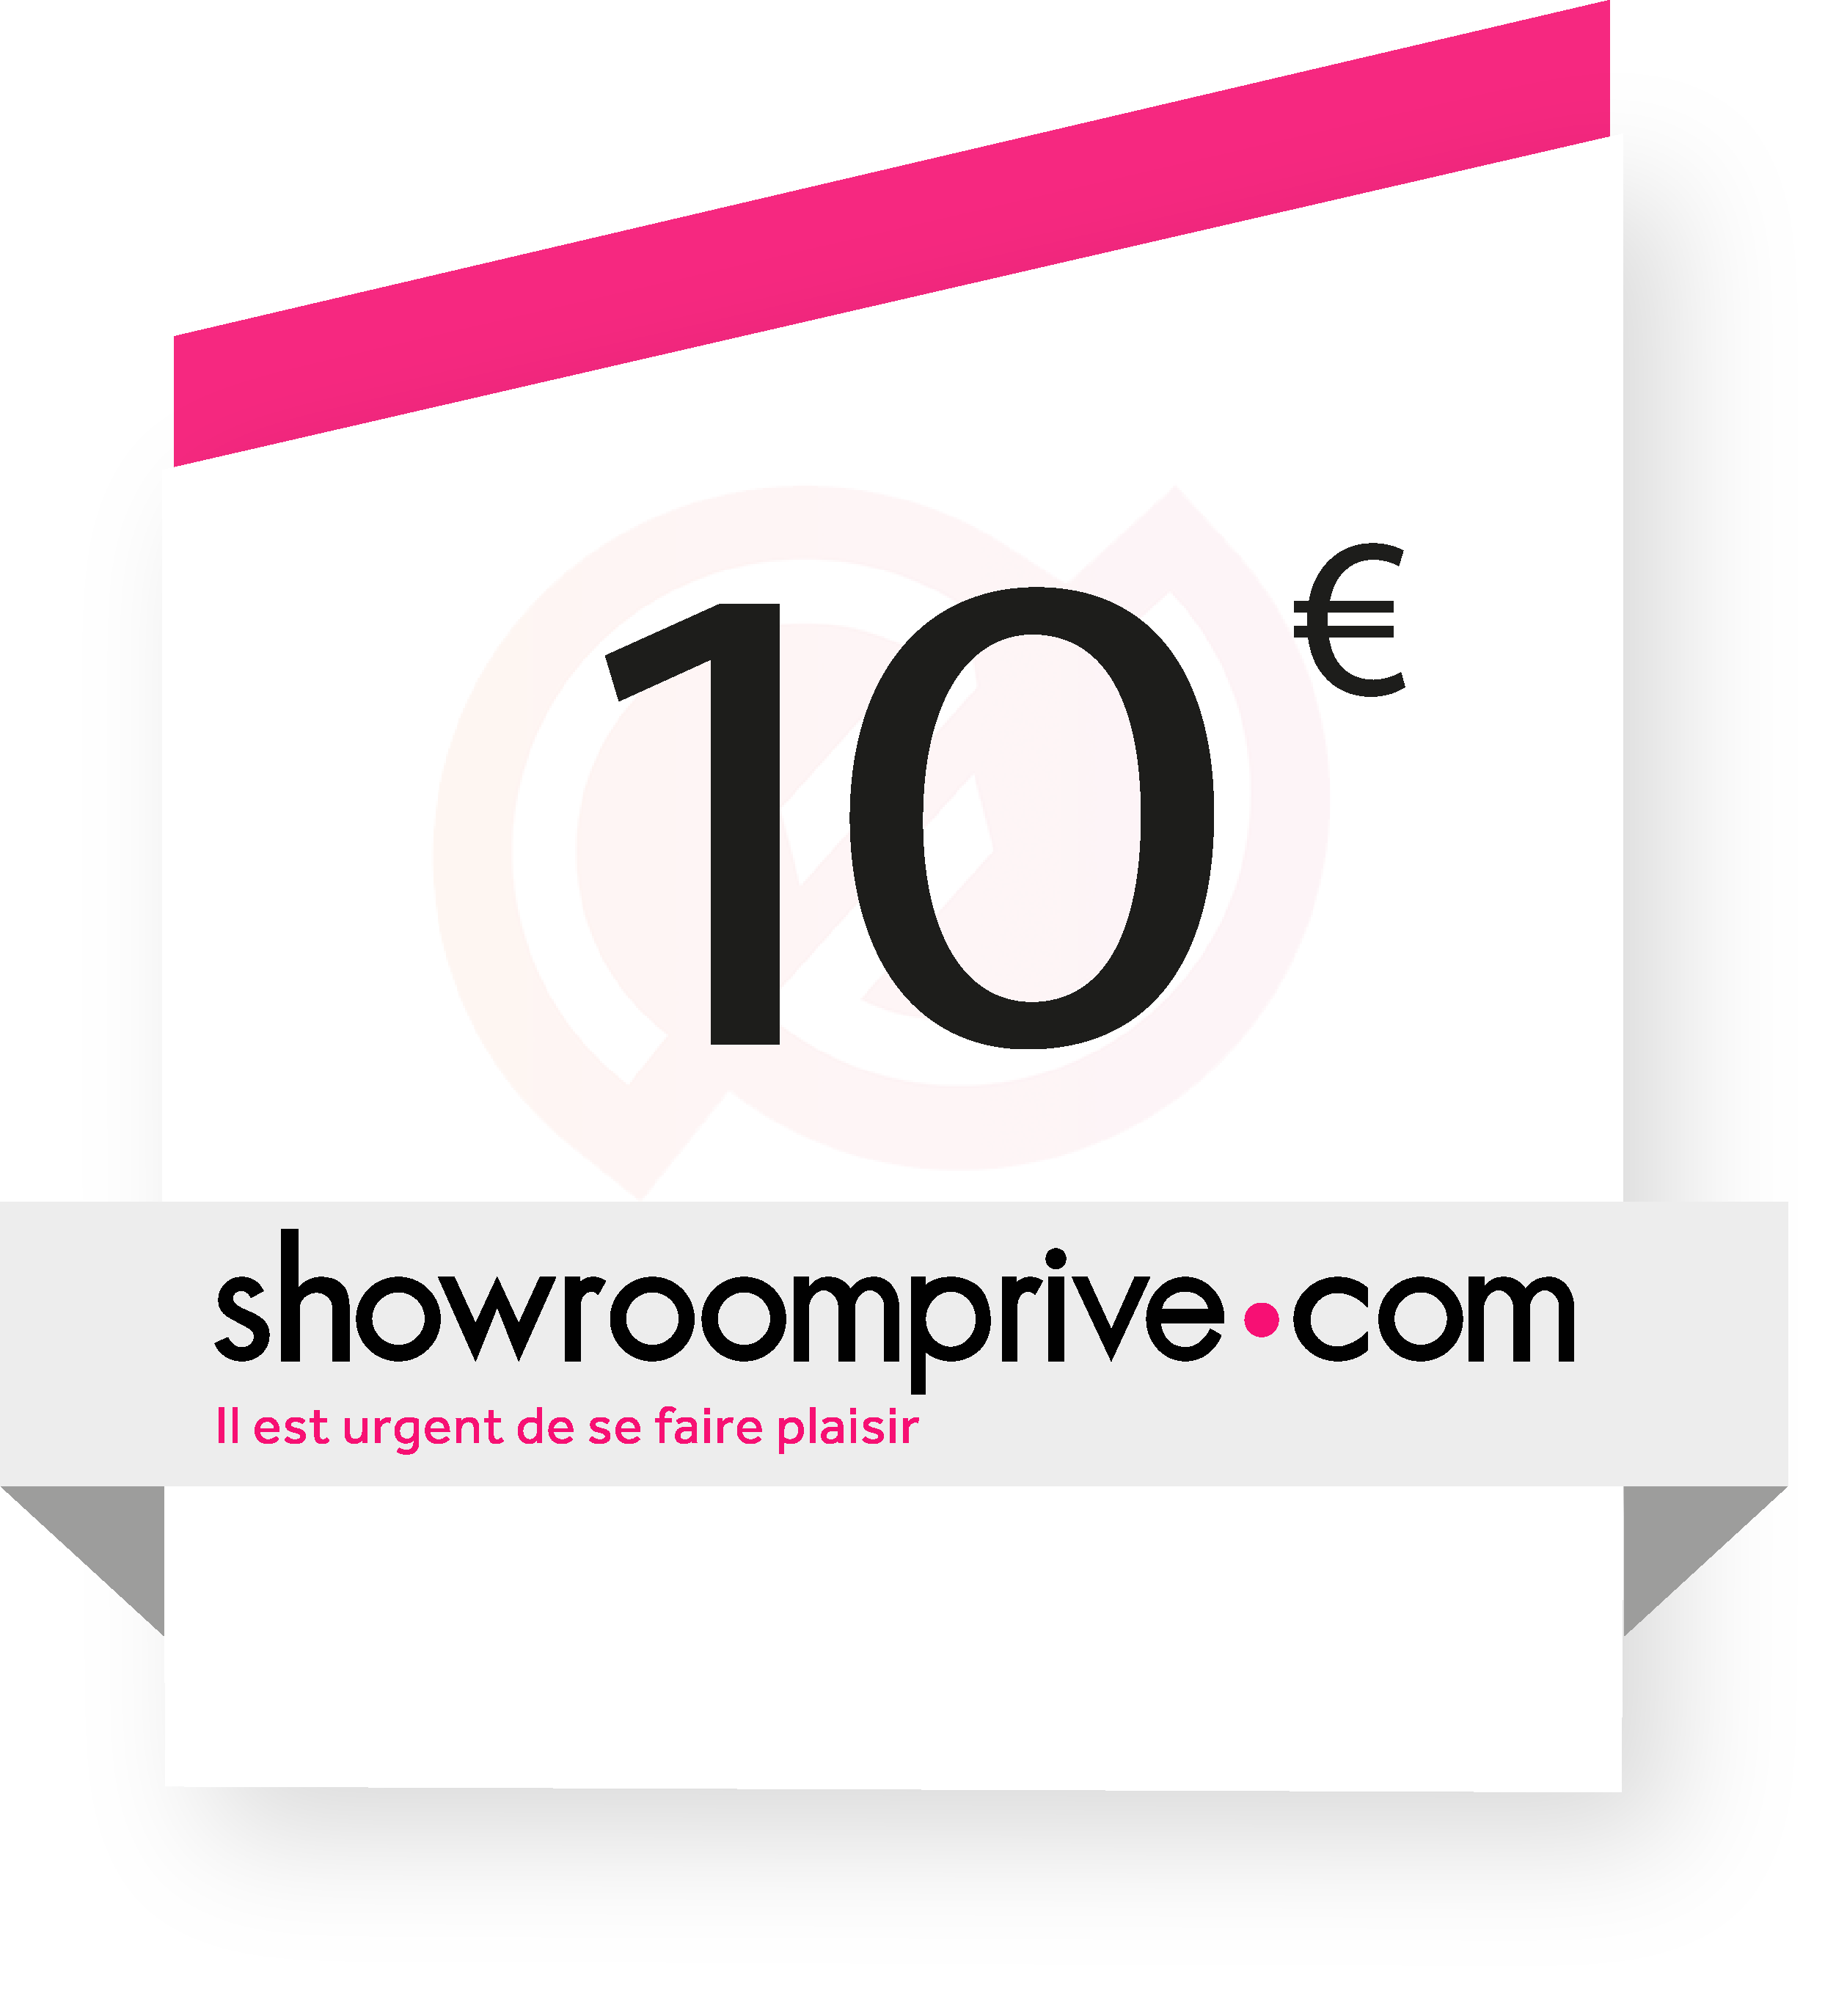 Coupon Showroomprivé.com 10€ sur internet - Gueez